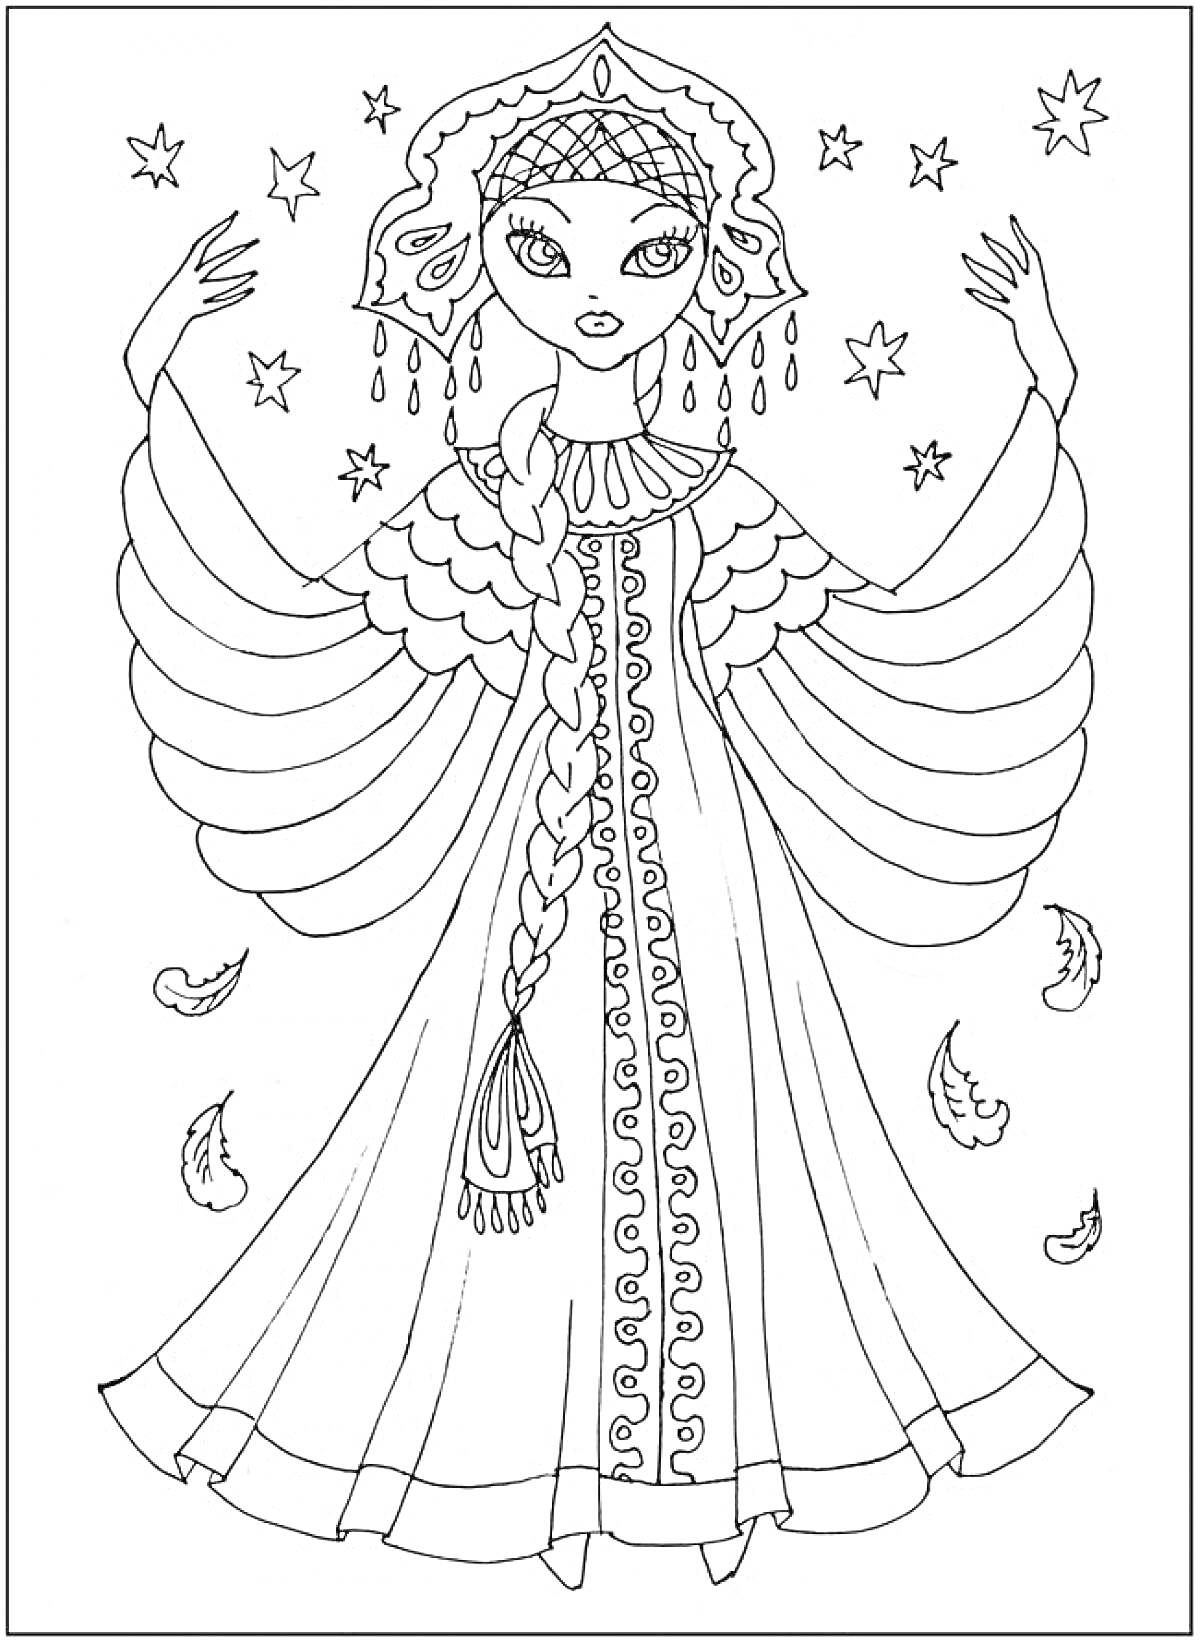 Раскраска Царевна в традиционном головном уборе с длинной косой и узорным платьем, кружевное ожерелье, элементы в виде звезд и перьев